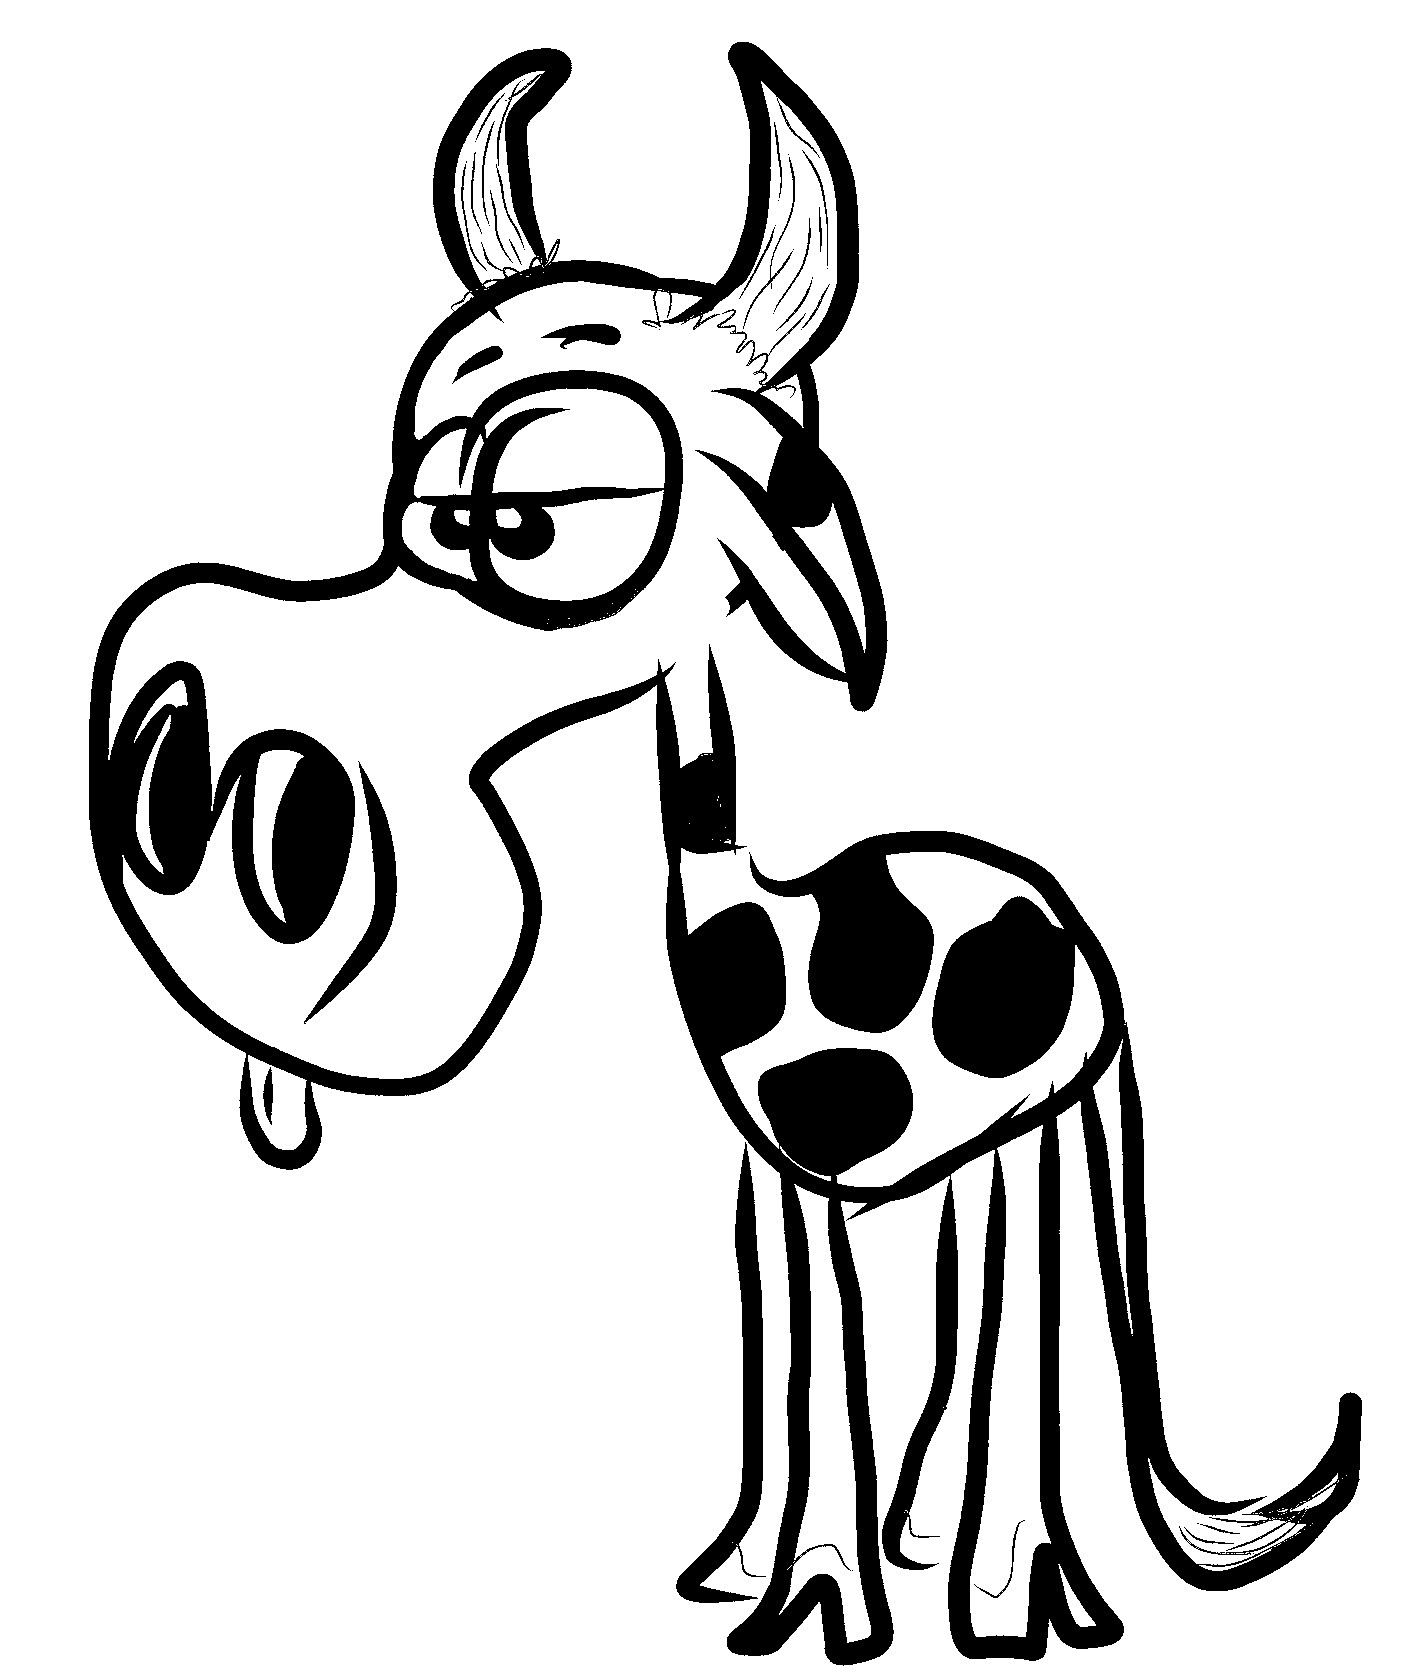 Disegno da colorare di mucca umoristica simile a giraffa